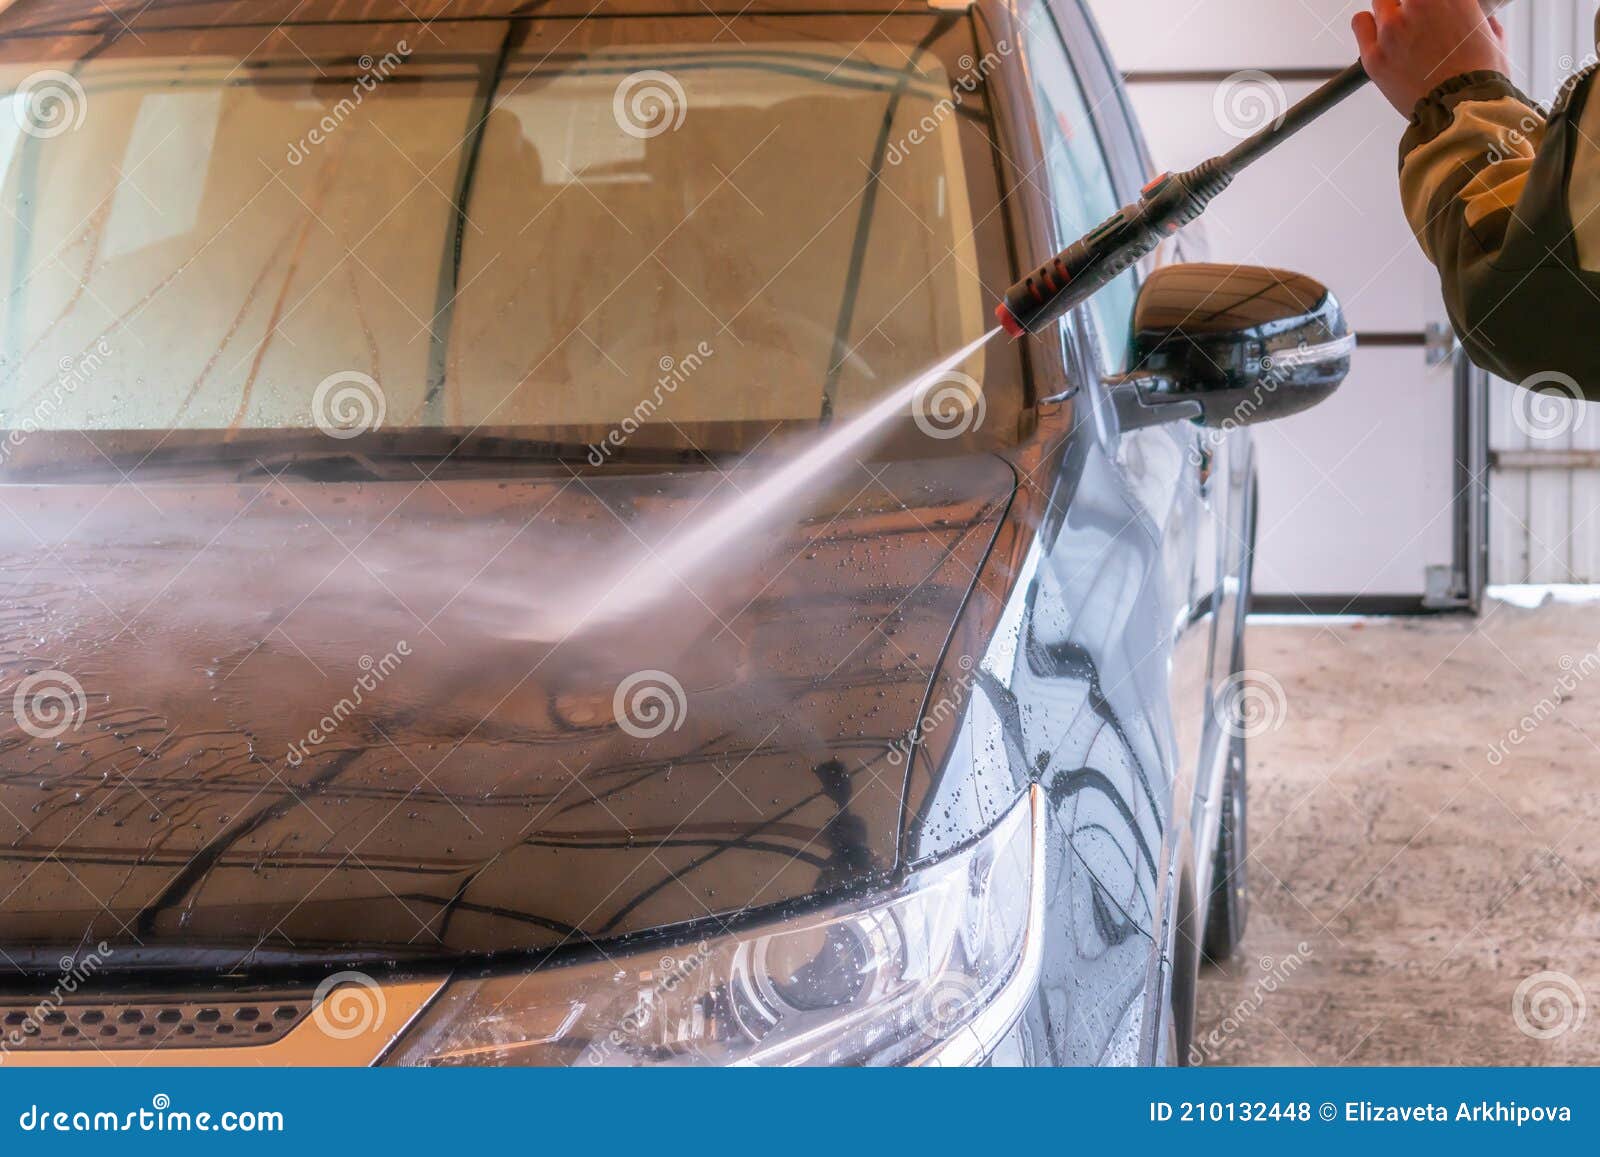 Lavage De Voiture Avec Karcher. L'homme Lave La Voiture Noire Photo stock -  Image du automobile, masculin: 210132448